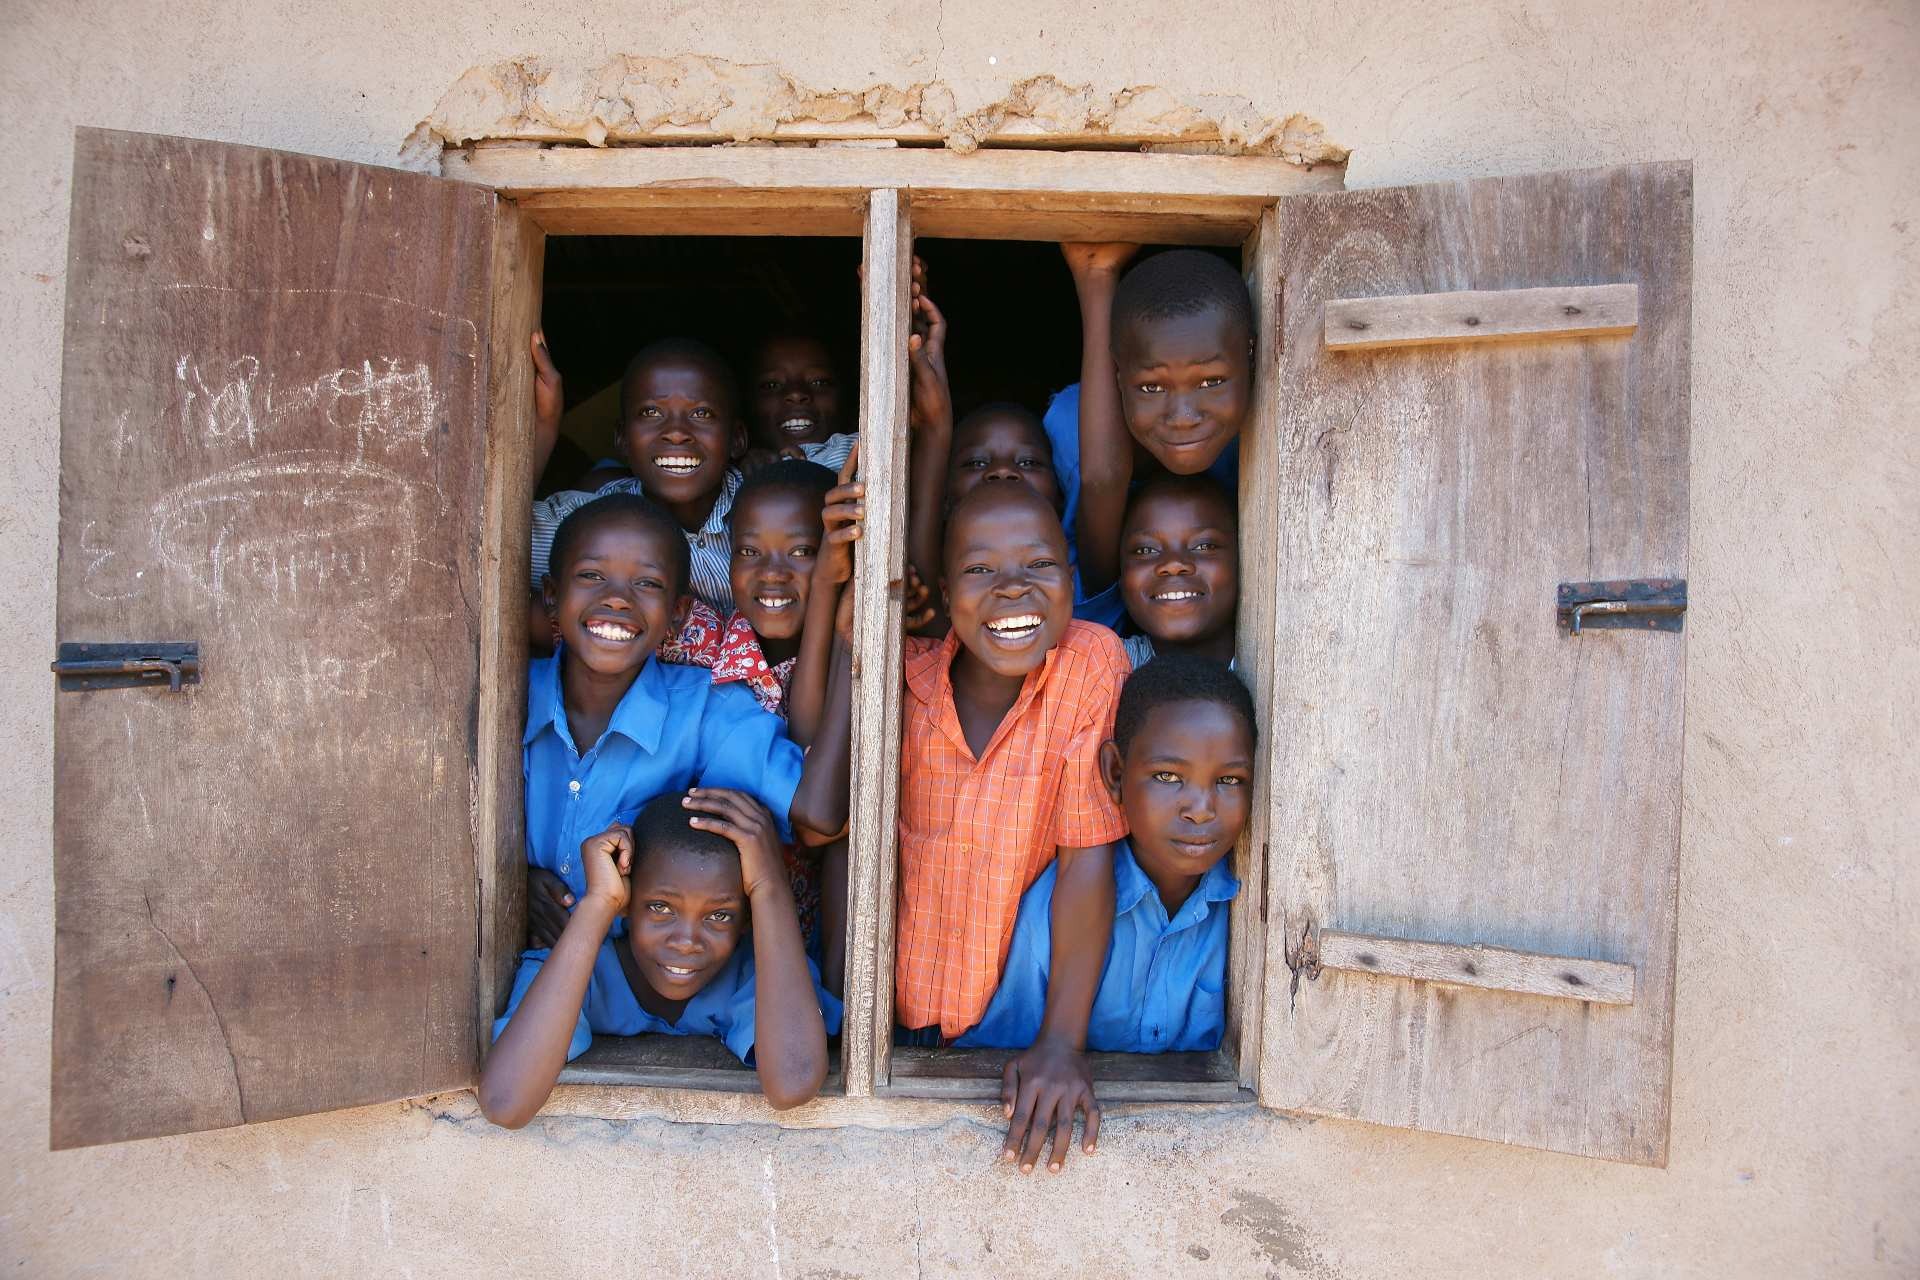 報告：非洲童學會基礎知識機率
 遠比其他地區低五倍